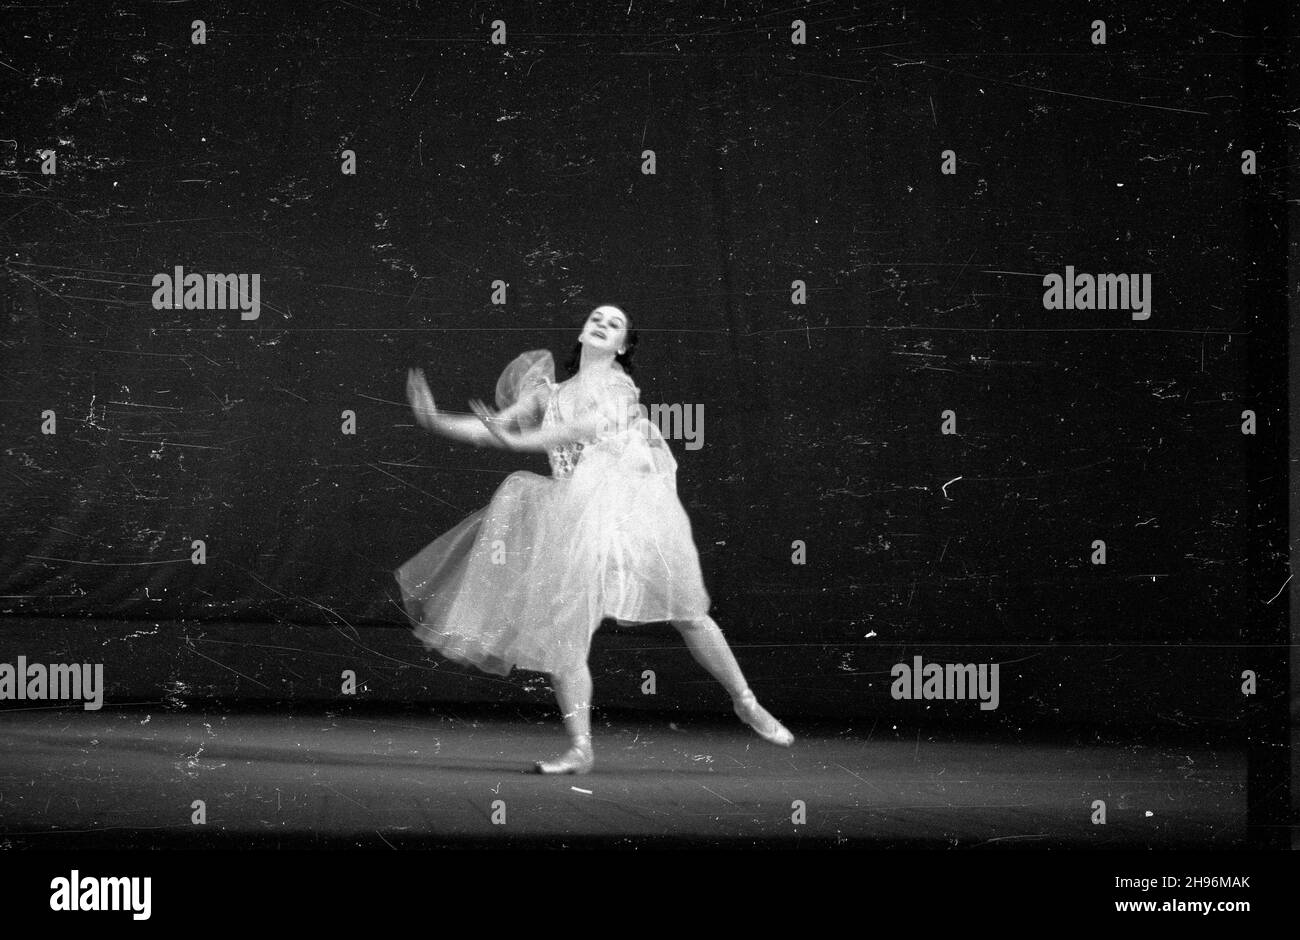 Warszawa, 1947-08-30. Wystêpy tancerzy radzieckich w Teatrze Wielkim. bb/mgs  PAP      Warsaw, Aug. 30, 1947. Performance of Soviet dancers in the Grand Theatre.  bb/mgs  PAP Stock Photo